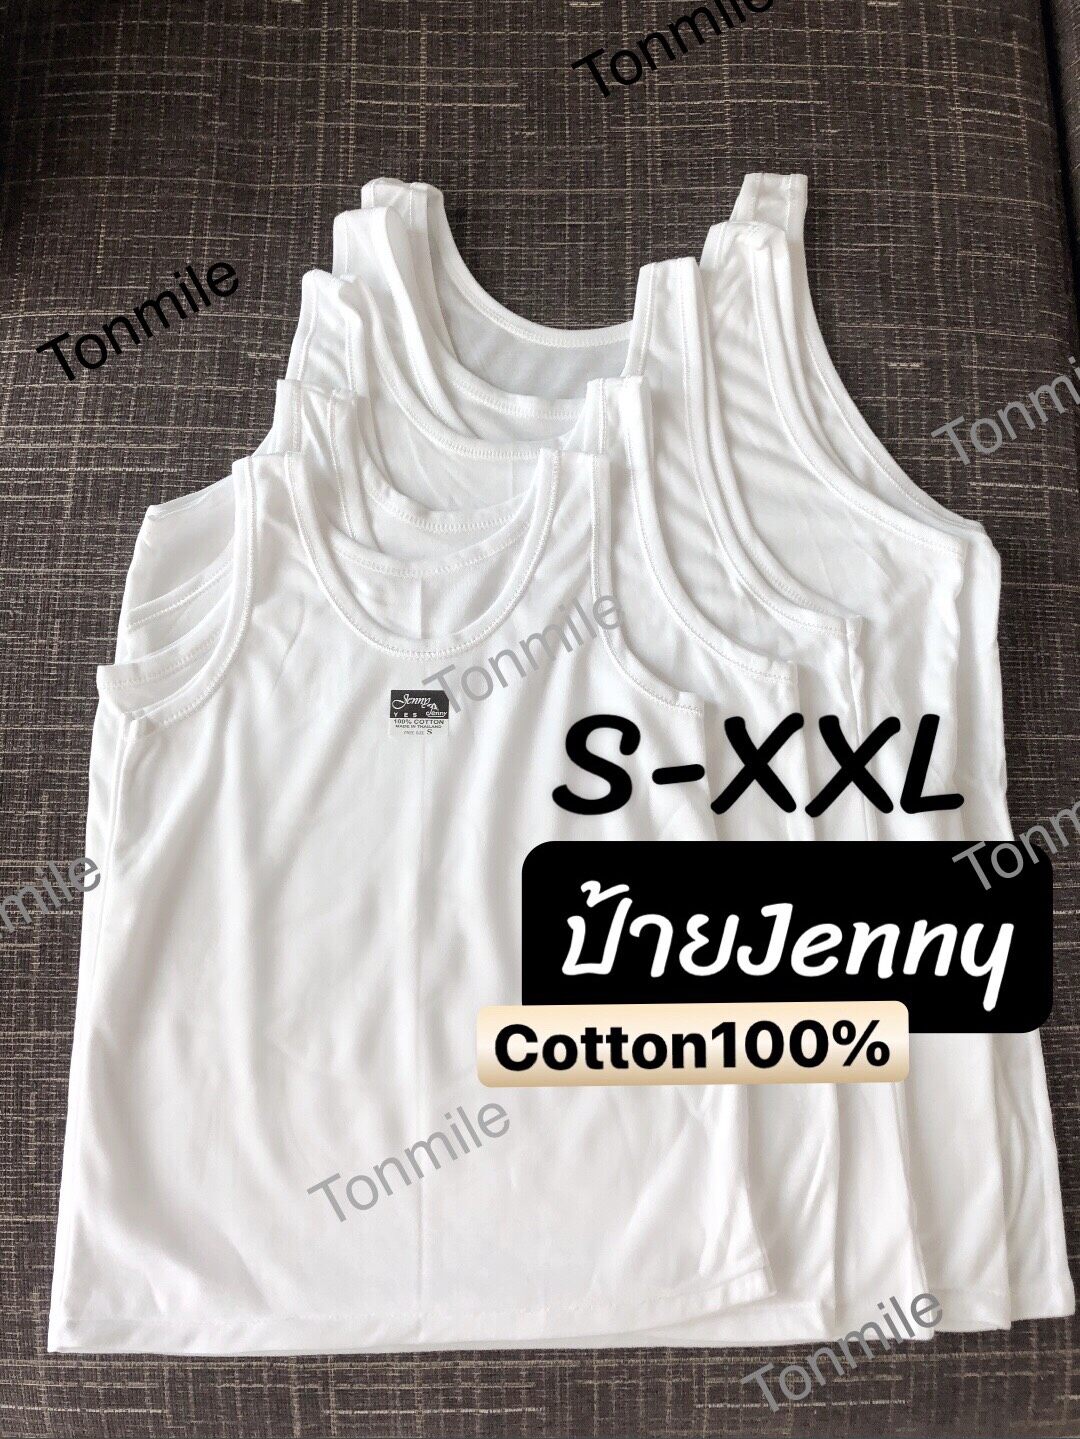 Tonmile เสื้อซับใน S - Xxl ป้าย Jenny Cotton 100% เด็ก - ผู้ใหญ่ ไม่มีลาย เสื้อทับใน เสื้อซ้อน เสื้อกล้าม สีขาว เสื้อซับ คนอ้วน. 